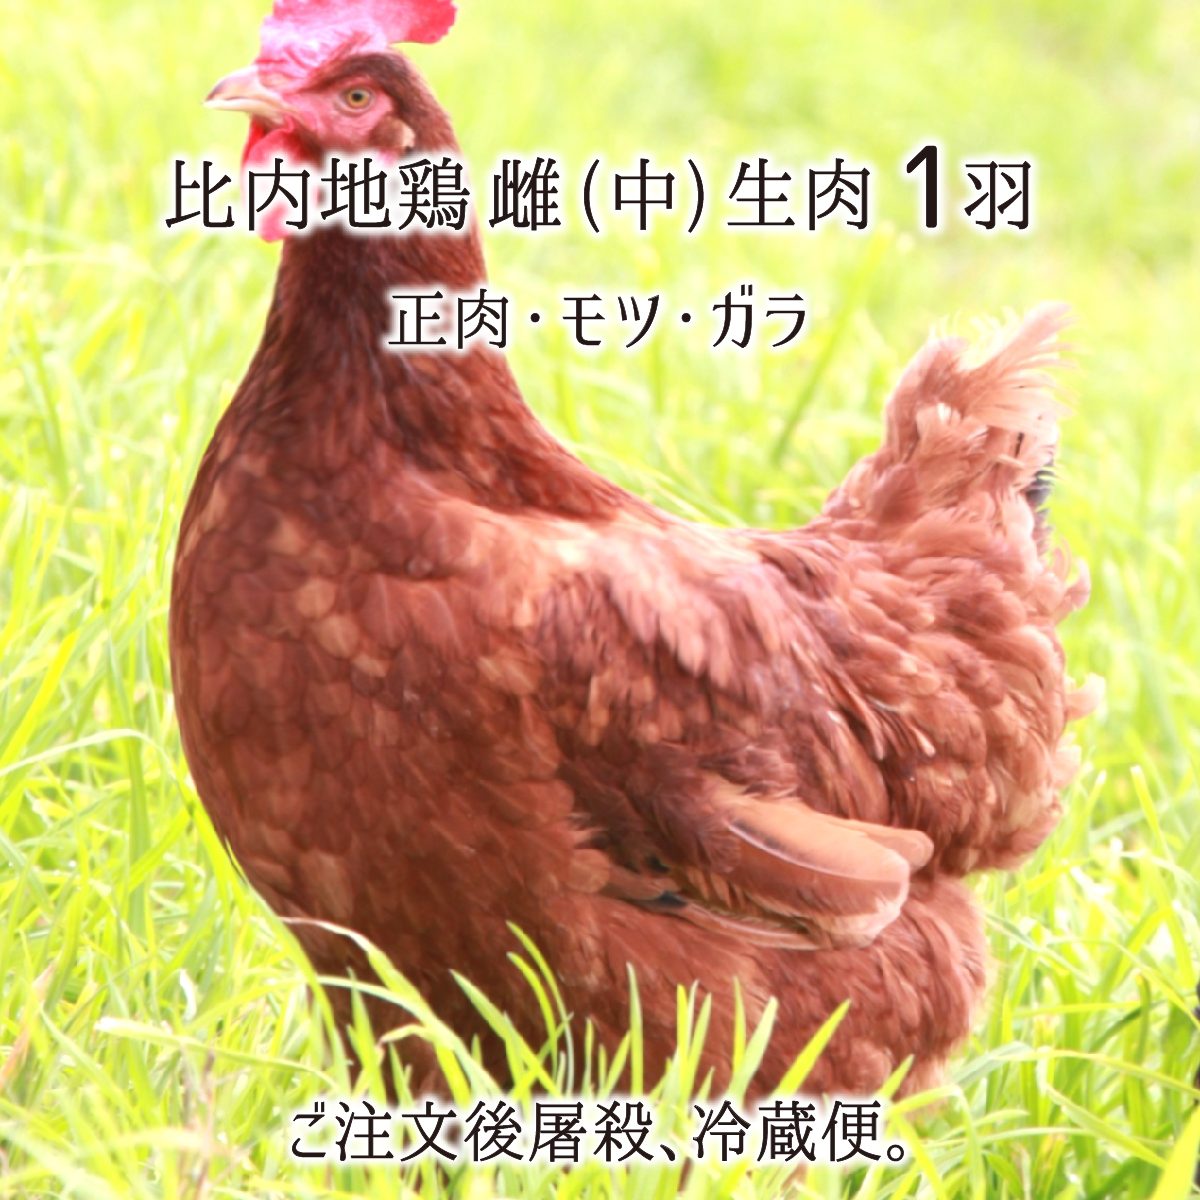 &nbsp;生産地は、秋田県中央部に位置する出羽丘陵地、大仙市協和。 肉質を上げる規定以上の160〜180日間飼育の比内地鶏です。 この鶏の特長は、弾力の肉質と、綺麗に澄む豊富な旨味出汁。 ご注文後に屠殺解体し、部位別に捌き冷蔵便でお届けします。&nbsp; 名称比内地鶏 中型 雌 1羽(正肉・モツ・ガラ) 内容量●正肉(約1.1kg)：むね／もも／ささみ／せせり／手羽先／皮／ぼんじり／(脂)。●もつ(約150g)：ハツ／レバー／砂肝／(きんかん／卵管は個体により無い場合ございます)。●ガラ(約500g)。 生産者ハピー農場 生産地秋田県大仙市協和 保存方法冷蔵保存、10℃以下で保存下さい。 賞味期限発送日から約5日、到着後はお早めにお召し上がり下さい。 受注発送18時迄のご注文：原則6日以内に発送・冷蔵便。 出荷時期通年。尚、空調施設内飼育でございません。時期等で肉質・脂質に若干個体差が生じます(冬〜春：脂多め、夏〜秋：脂少なめ筋肉質になります)。ご了承下さい。 熨斗4種類「御中元／御歳暮／御祝／御礼」但し12/20〜30発送では承れません。ご了承下さい。 注記比内地鶏は、弾力肉質の鶏です。柔らかい肉質好みの方は、短期飼育やケージ飼育の鶏が向きます。よろしくお願い致します。160日以上飼育する最高級鶏肉、比内地鶏(雌)。 名古屋コーチン、薩摩地鶏と並ぶ日本三大美味鶏。 比内地鶏は、弾力肉質で歯応えがあり、出汁が豊富に出る地鶏です。 加熱しても硬化しにくく、焼いても鍋に入れても、風味を損なわない強さがあります。 160日以上費やし育てる最高級鶏肉。焼いた表皮から漂う香り、顎に伝わる弾力、甘い脂の豊富な出汁を是非ご体感ください。 ご注文後に捕獲し、屠殺解体処理。 ご注文頂いてから屠殺し捌きます。解体当日もしくは翌日に冷凍工程を挟まず、チルド発送します。 表皮をさっと炙ってお刺身で、調味料を少し振ってグリルで、ガラで出汁を取って煮込み等、楽しみ方様々です。 尚、当商品は「雌鶏」です。雌雄比べますと、脂乗り良く風味に柔らかみある雌鶏、一回り大きく筋肉質で歯応え強く旨味濃厚な雄鶏になります。 世界へ誇る秋田ブランド、比内地鶏。 比内地鶏は、天然記念物の比内鶏(雄)×ロードアイランドレッド(雌)の一代交配種で、日本農林規格規定の下、飼育された地鶏を言います。 ●比内地鶏の認証規定。 ・場所：1平方メートルに5羽以下。 ・方法：放飼い、平飼い。 ・期間：孵化から150日間以上。 ブロイラー(約45日飼育)等、身動きの取れない鶏舎に詰め込み、大量の餌で太らせた鶏とは、全く別物の肉質が感じられるはずです。 作り手 ”ハピー農場” さん(秋田県) 広い鶏舎で育つ、毛艶の良い比内地鶏。 秋田県中央部、出羽山地の丘陵地、大仙市協和に鶏舎を構えます。 野生に近い環境は、毛艶を良くし、秋田美人な比内地鶏を育てます。 一羽当たりのスペースを広く取り、約2000羽の少数管理。燦々と陽差しを浴びて元気闊達に走り回り、余分な脂が落ちて、筋肉質に引き締まります。 肉質を上げる、規定より費やす飼育日数。 150日以上の飼育期間が秋田県で規定されていますが、当園の比内地鶏は、160〜180日を飼育期間に費やします。 長期間の飼育は、それだけ餌も食べて費用が掛かり、手間も要します。 しかし、卵を産み始める160日を超える頃、脂の乗りが良くなり、最高に美味しい肉味を与えてくれます。 安全な飼育環境と認証処理施設。 飲み水：特別豪雪地帯に指定される、上質な雪解水を与えます。 餌：遺伝子組み換え、添加物飼料を一切使わず、農薬、化学肥料に頼らないEM菌(有用微生物群)飼料を中心に、野菜、野草を加えて育てます。 ご注文後に捕獲し、認証施設で屠殺解体処理し発送します。屠殺後短時間でお届けします比内地鶏の風味を、お気に召して頂けましたら幸いです。 秋田県大仙市産 比内地鶏 生肉 冷蔵【送料無料】 名称比内地鶏 中型 雌 1羽(正肉・モツ・ガラ) 内容量●正肉(約1.1kg)：むね／もも／ささみ／せせり／手羽先／皮／ぼんじり／(脂)。●もつ(約150g)：ハツ／レバー／砂肝／(きんかん／卵管は個体により無い場合ございます)。●ガラ(約500g)。 生産者ハピー農場 生産地秋田県大仙市協和 保存方法冷蔵保存、10℃以下で保存下さい。 賞味期限発送日から約5日、到着後はお早めにお召し上がり下さい。 受注発送18時迄のご注文：原則6日以内に発送・冷蔵便。 出荷時期通年。尚、空調施設内飼育でございません。時期等で肉質・脂質に若干個体差が生じます(冬〜春：脂多め、夏〜秋：脂少なめ筋肉質になります)。ご了承下さい。 熨斗4種類「御中元／御歳暮／御祝／御礼」但し12/20〜30発送では承れません。ご了承下さい。 注記比内地鶏は、弾力肉質の鶏です。柔らかい肉質好みの方は、短期飼育やケージ飼育の鶏が向きます。よろしくお願い致します。 ・納品書等金額の分かる書類は梱包致しておりません。「生産者、商品説明書」のみ同梱しお届け致します。 ・領収書をご希望の方は「備考欄」にてお伝えください。発送時に電子領収書にて発行致します。